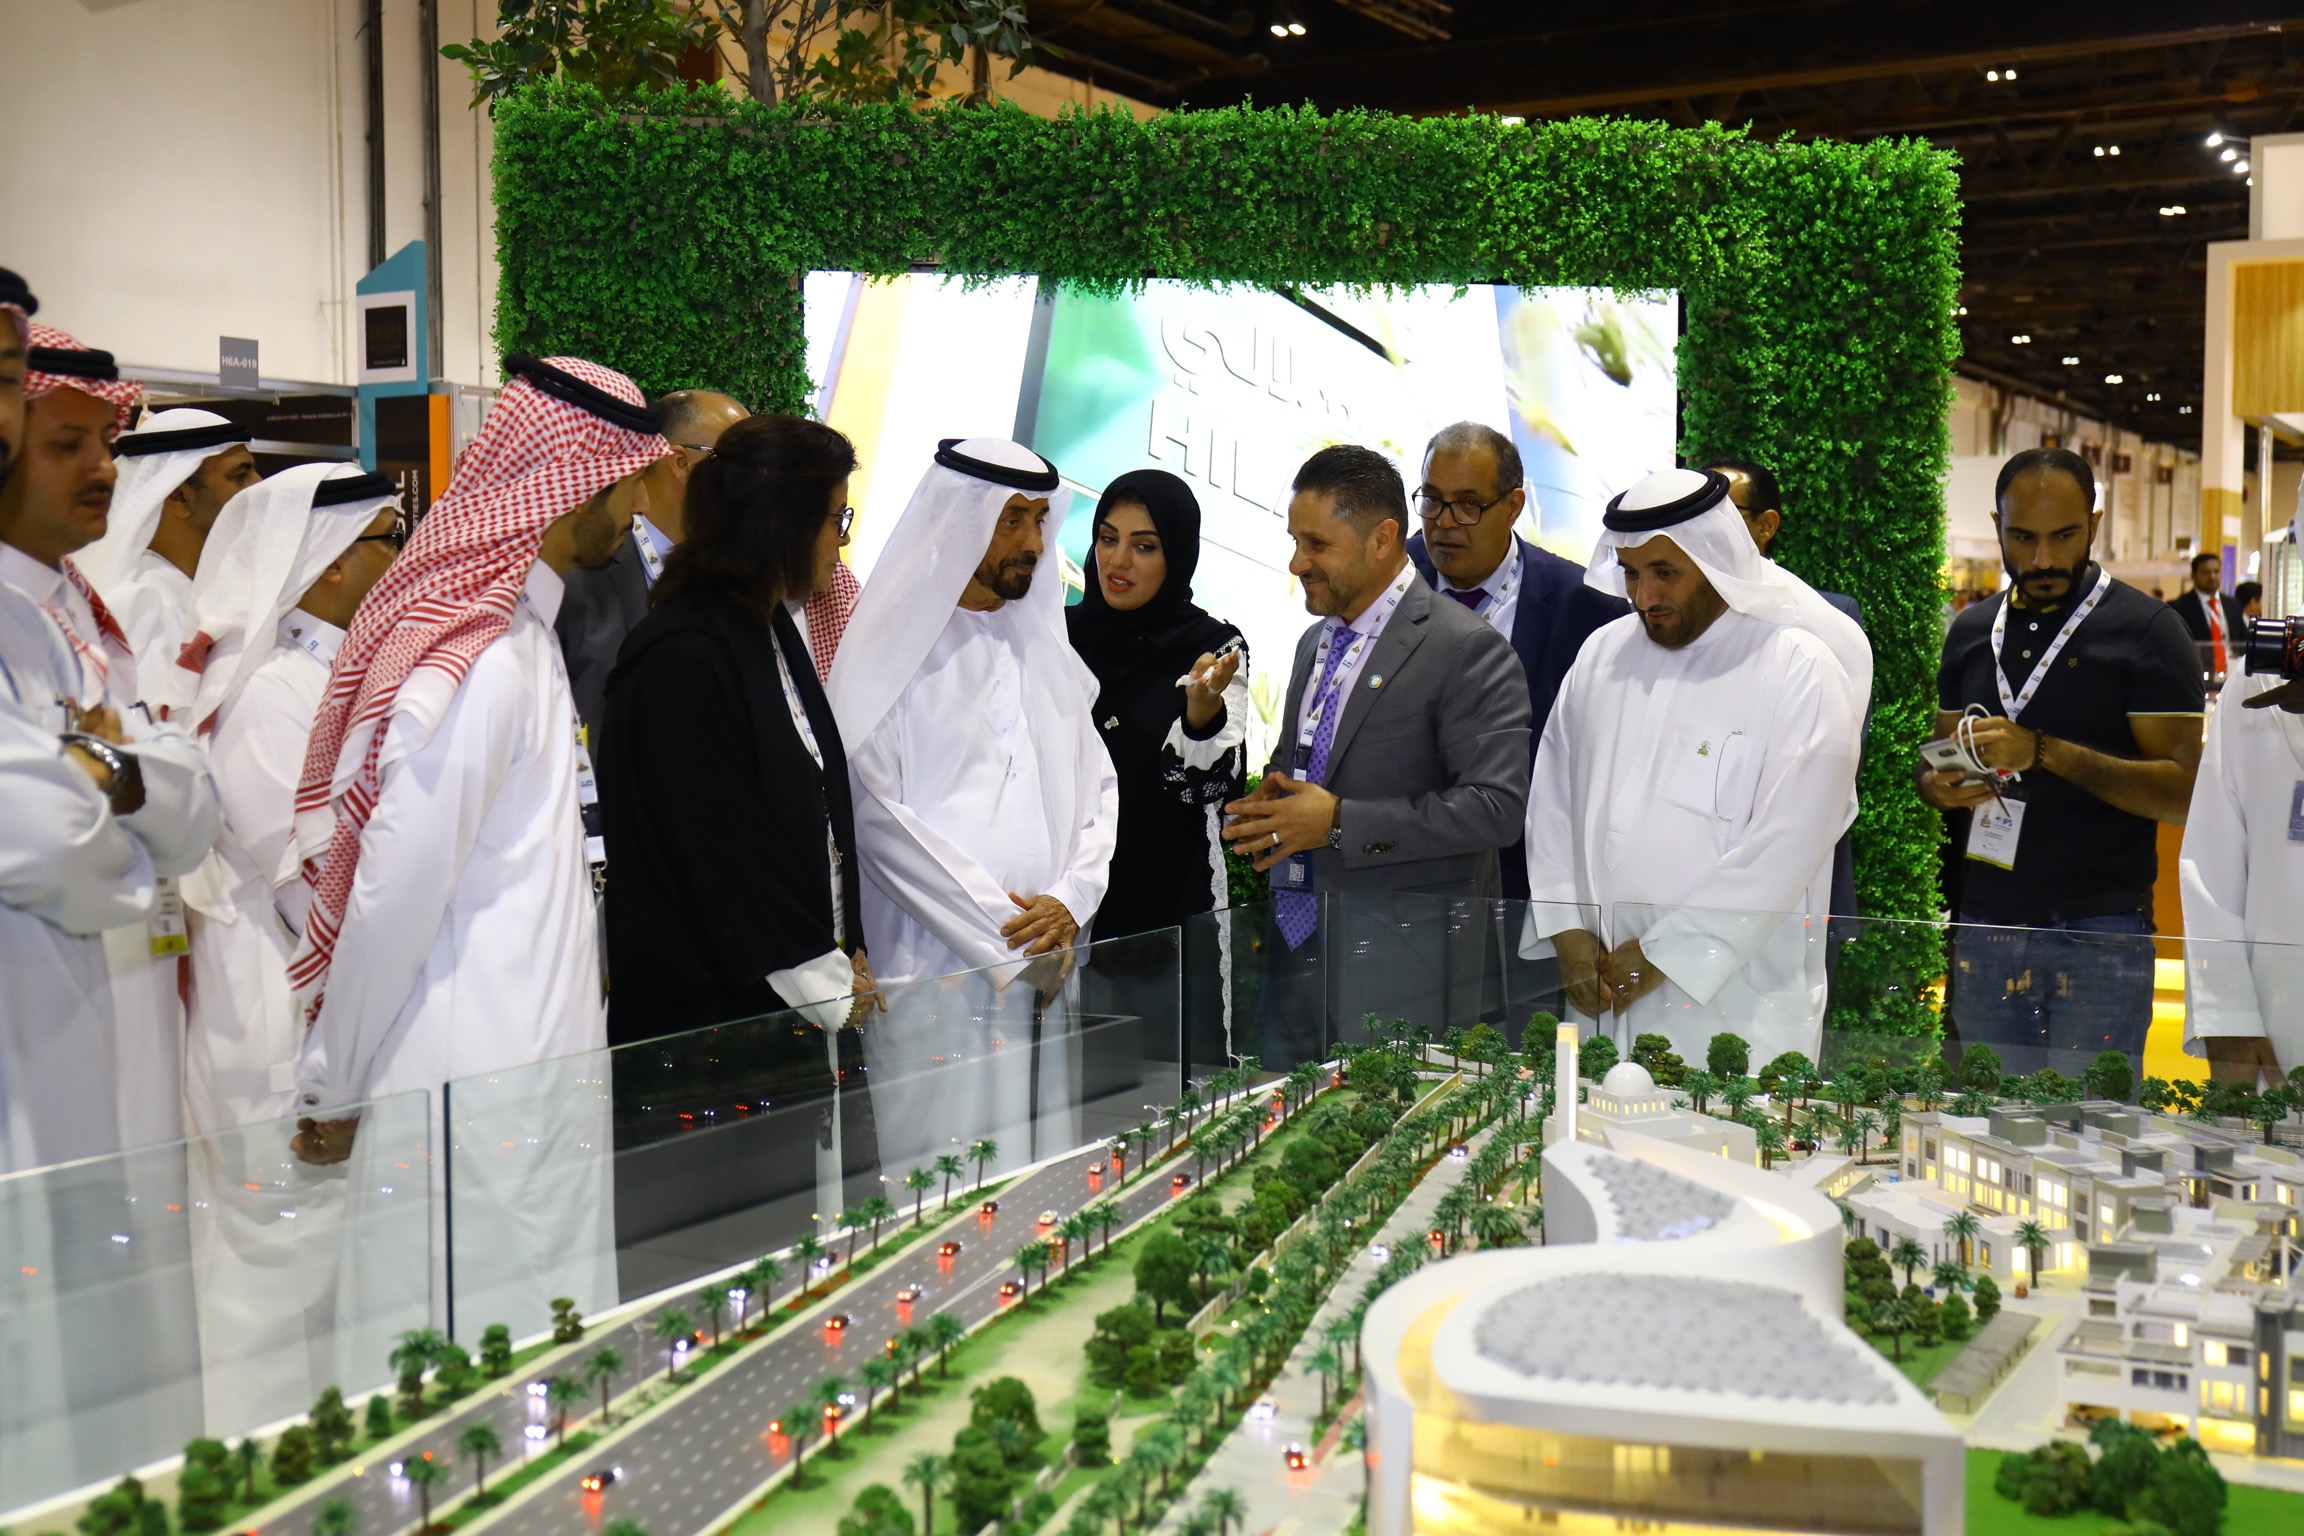 ‫معرض العقارات الدولي 2020 يعزز مكانة دبي كوجهة رائدة للاستثمارات العقارية‬ ‫ ‬